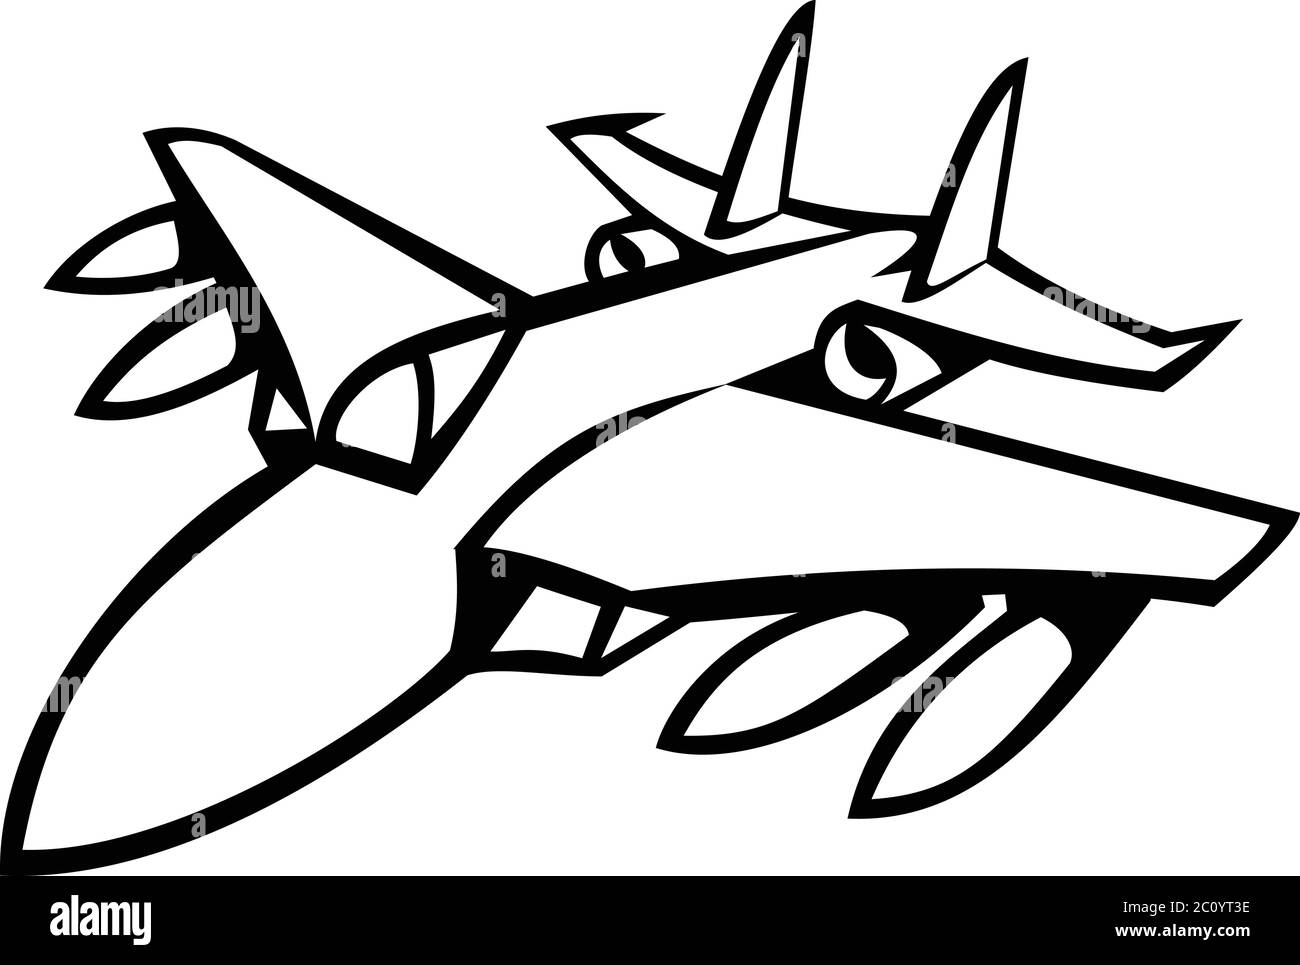 Icona Mascot illustrazione della testa di un jet da combattimento americano in pieno volo visto dalla parte anteriore su sfondo isolato in stile retrò bianco e nero. Illustrazione Vettoriale